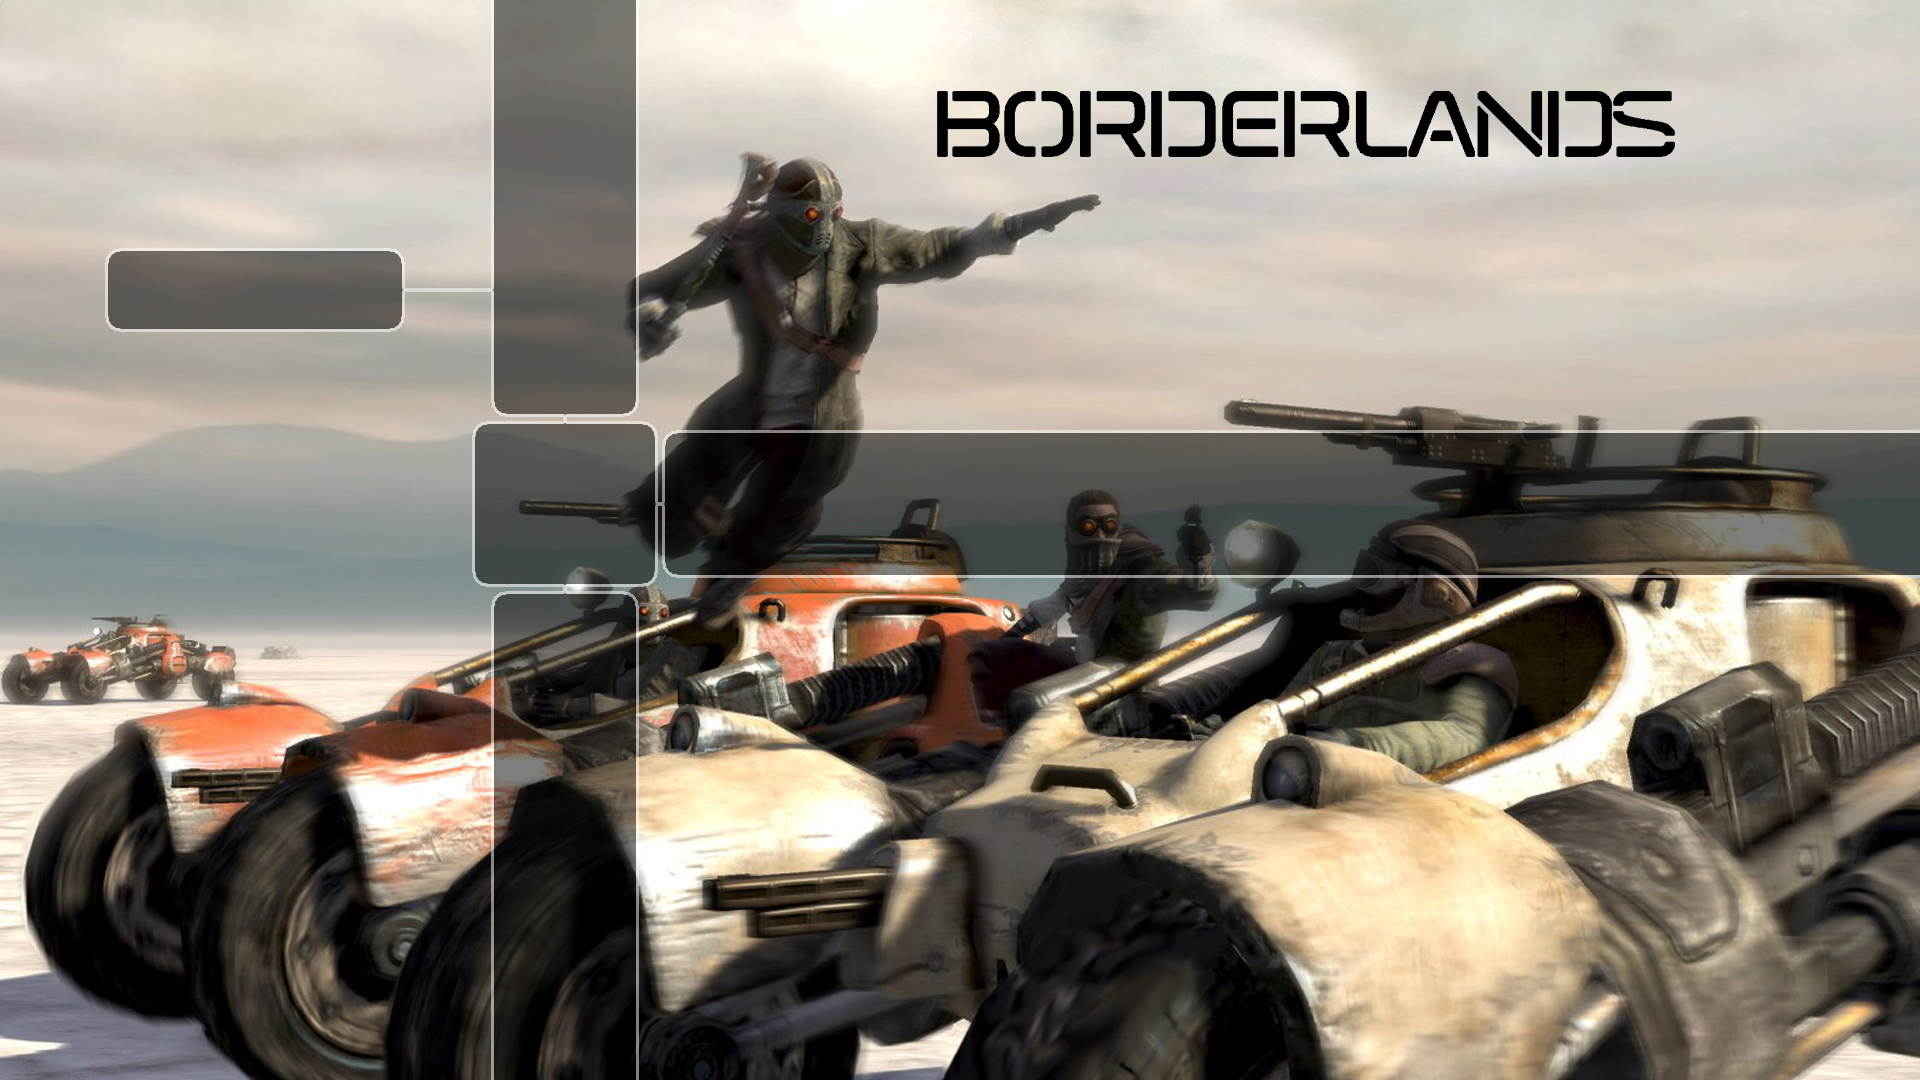 Borderlands, Playstation 3 - desktop wallpaper